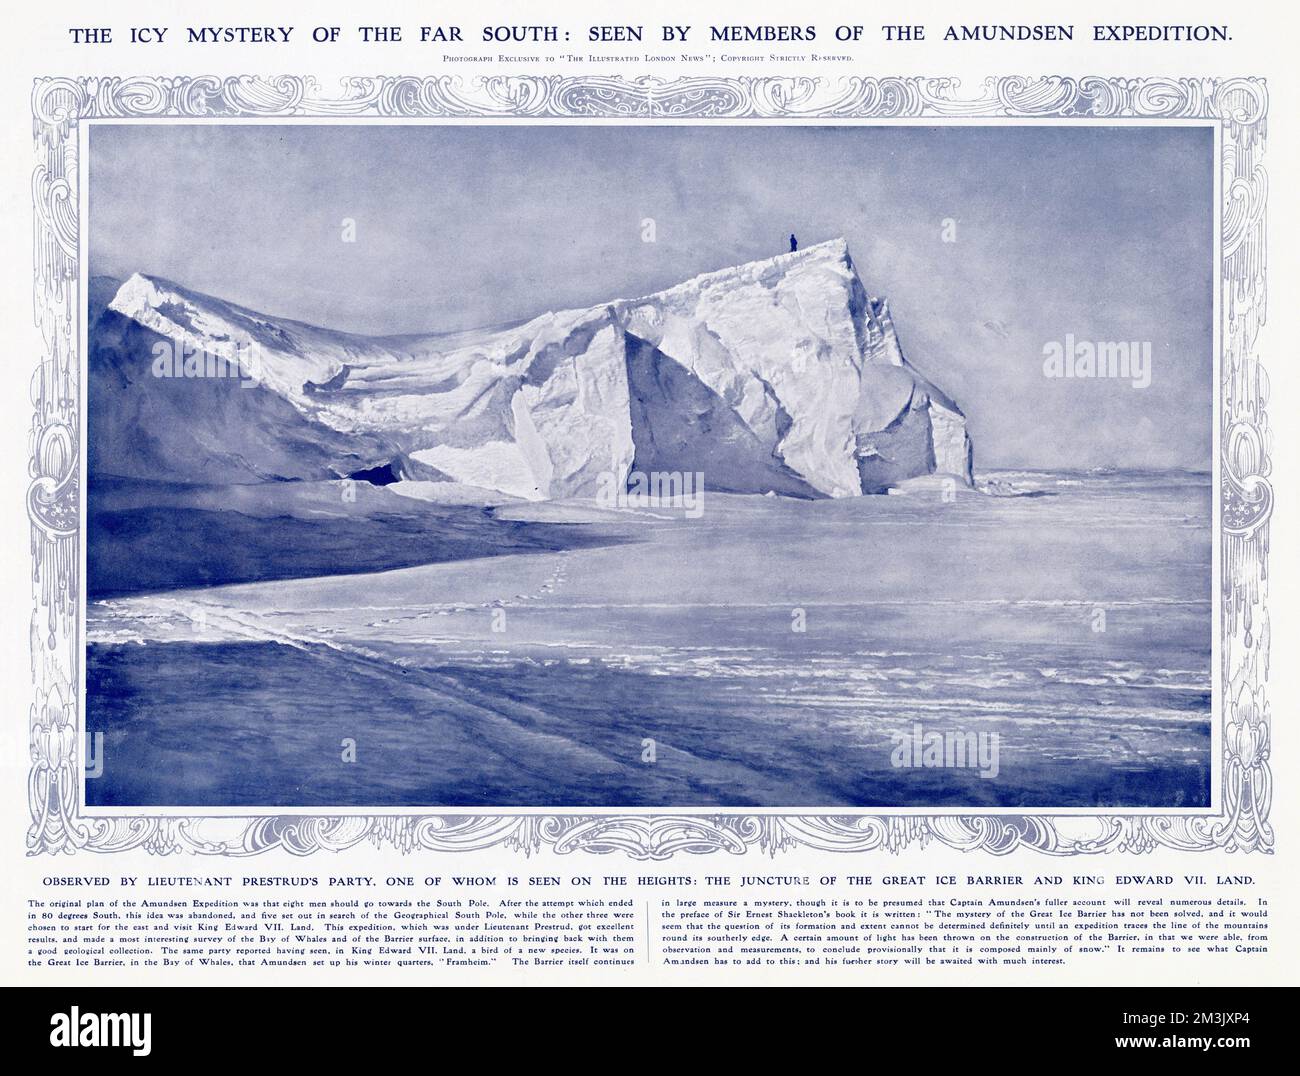 Mitglied der Amundsen Antarktis Expedition von 1910-12, steht auf der Großen Eisbarriere. Drei Männer wurden unter dem Kommando von Lieutenant Prestrud geschickt, um das Land von König Edward VII. Und die Bucht der Wale zu erkunden. Dieses Foto zeigt einen dieser Männer, der am Rand der Großen Eisbarriere steht und auf König Edward VII Land hinabblickt. Stockfoto